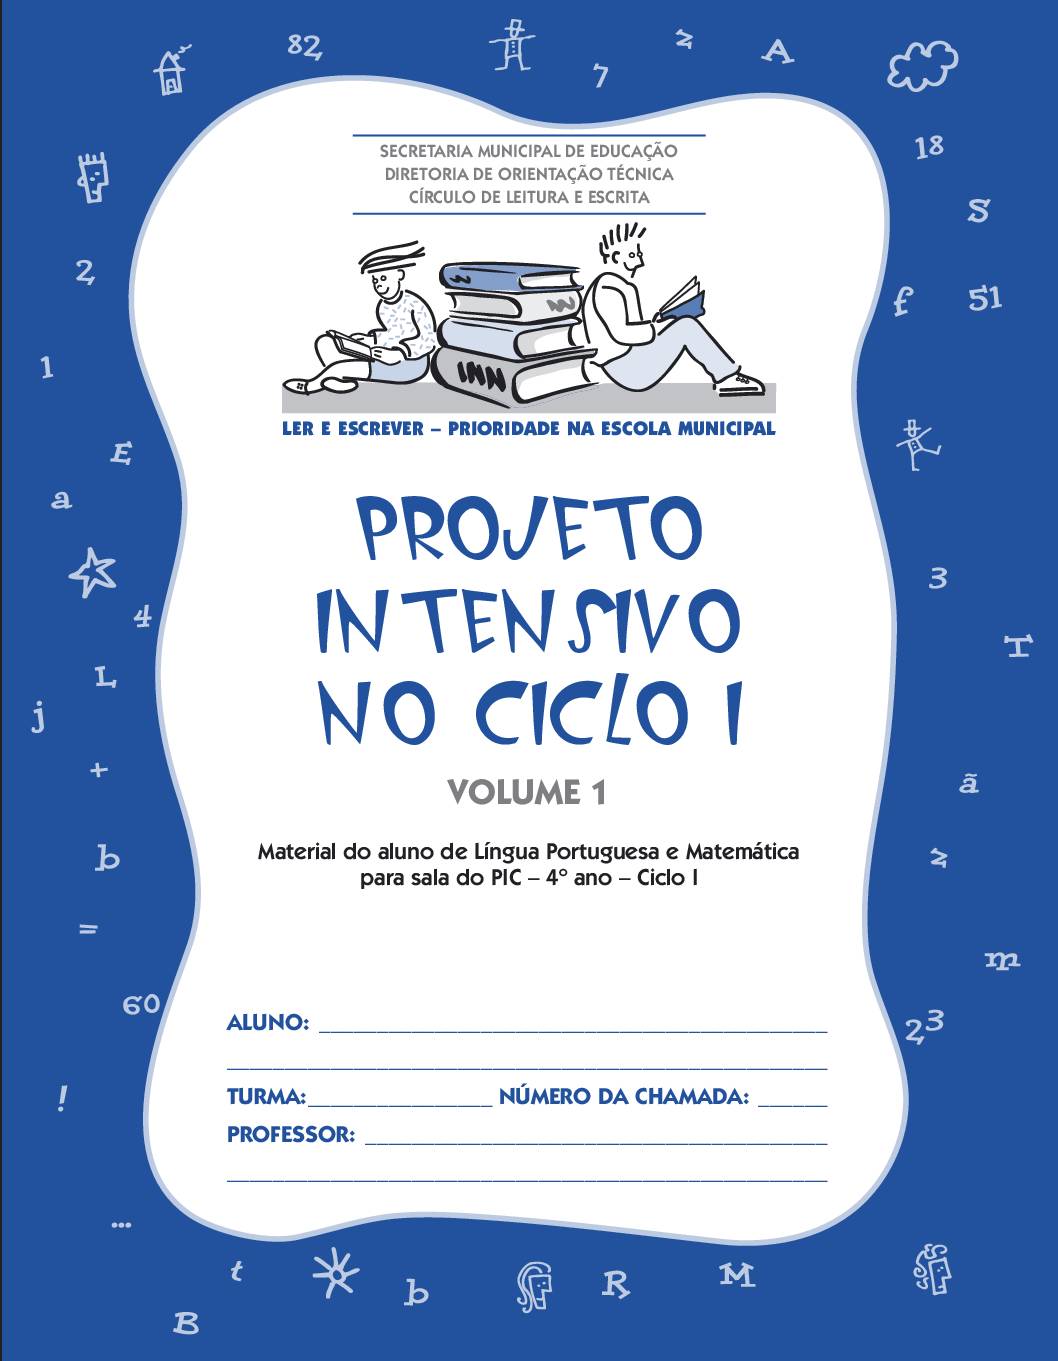 Material com atividades de Língua Portuguesa e Matemática para os estudantes da sala do Projeto Intensivo do Ciclo I - 4 º ano. Volume 1.